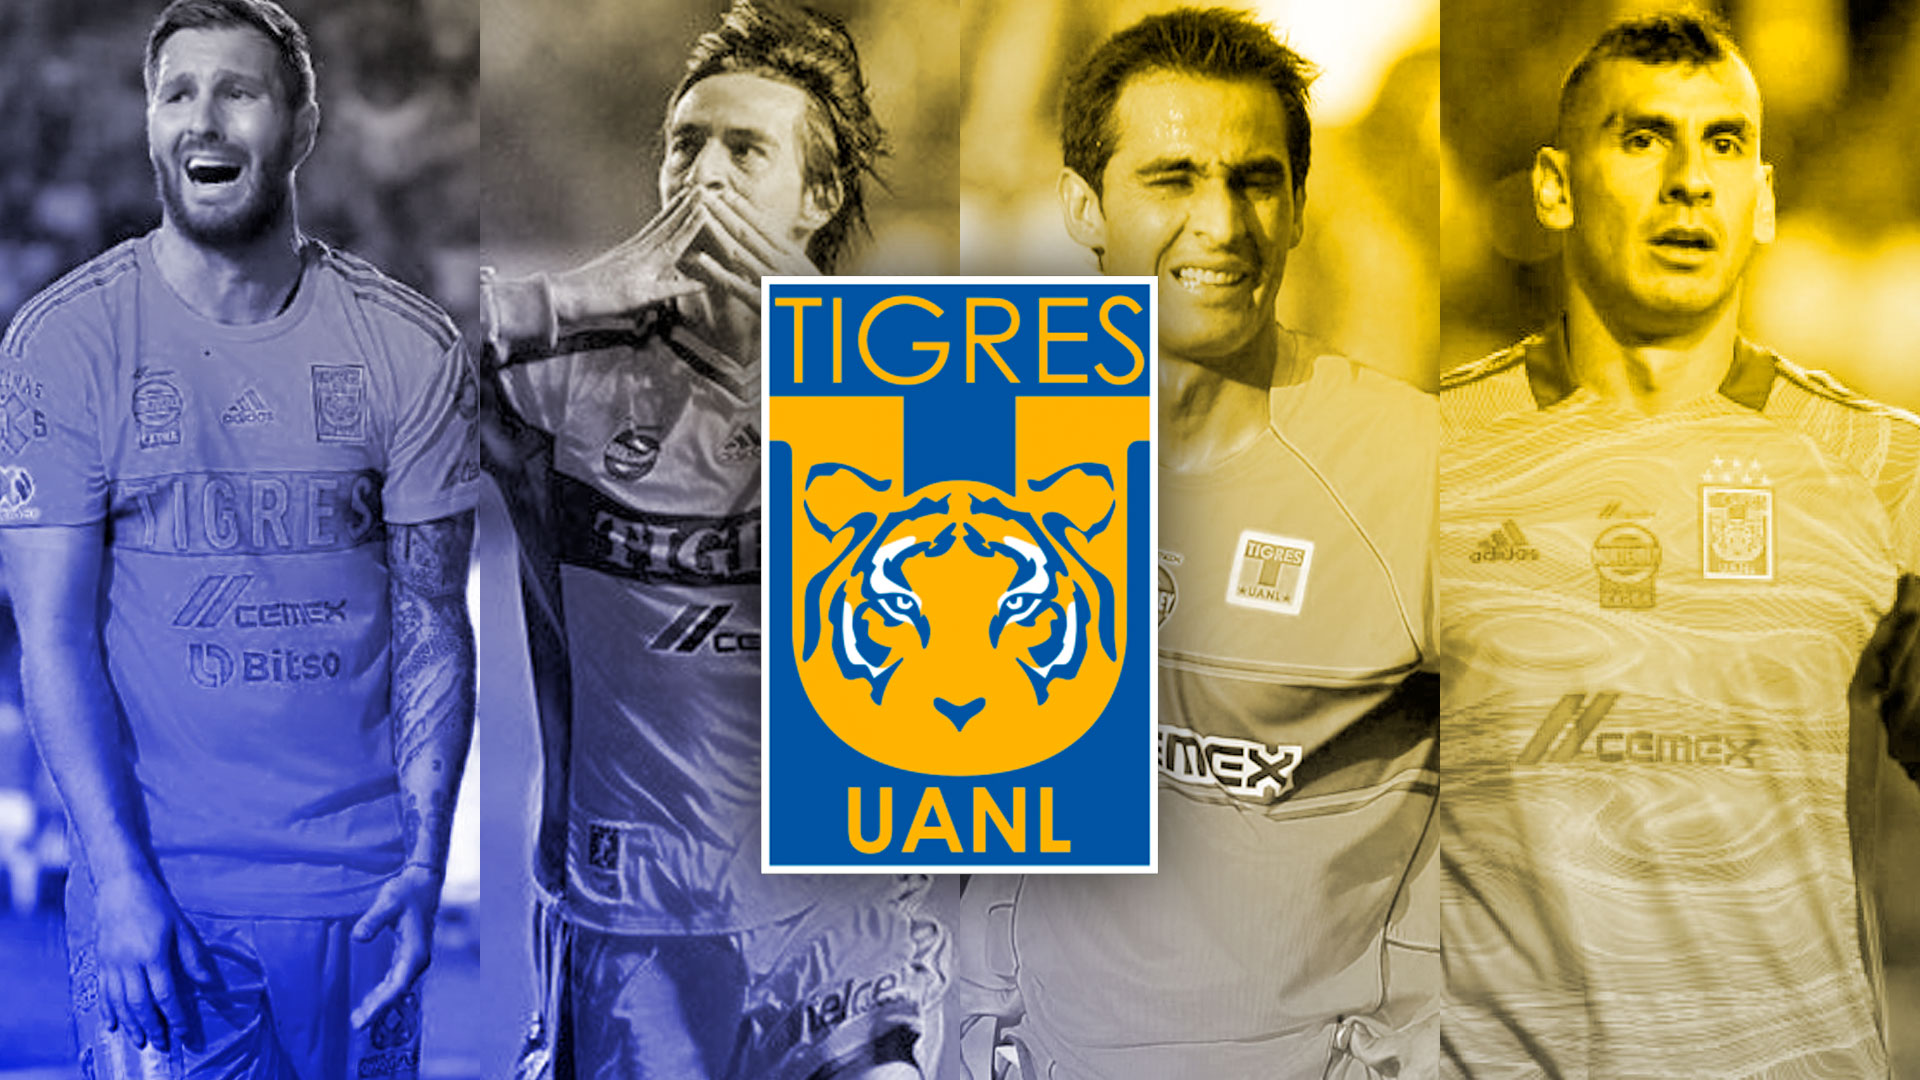 Tigres de Nuevo León, 63 años de historia en el fútbol mexicano - Infobae